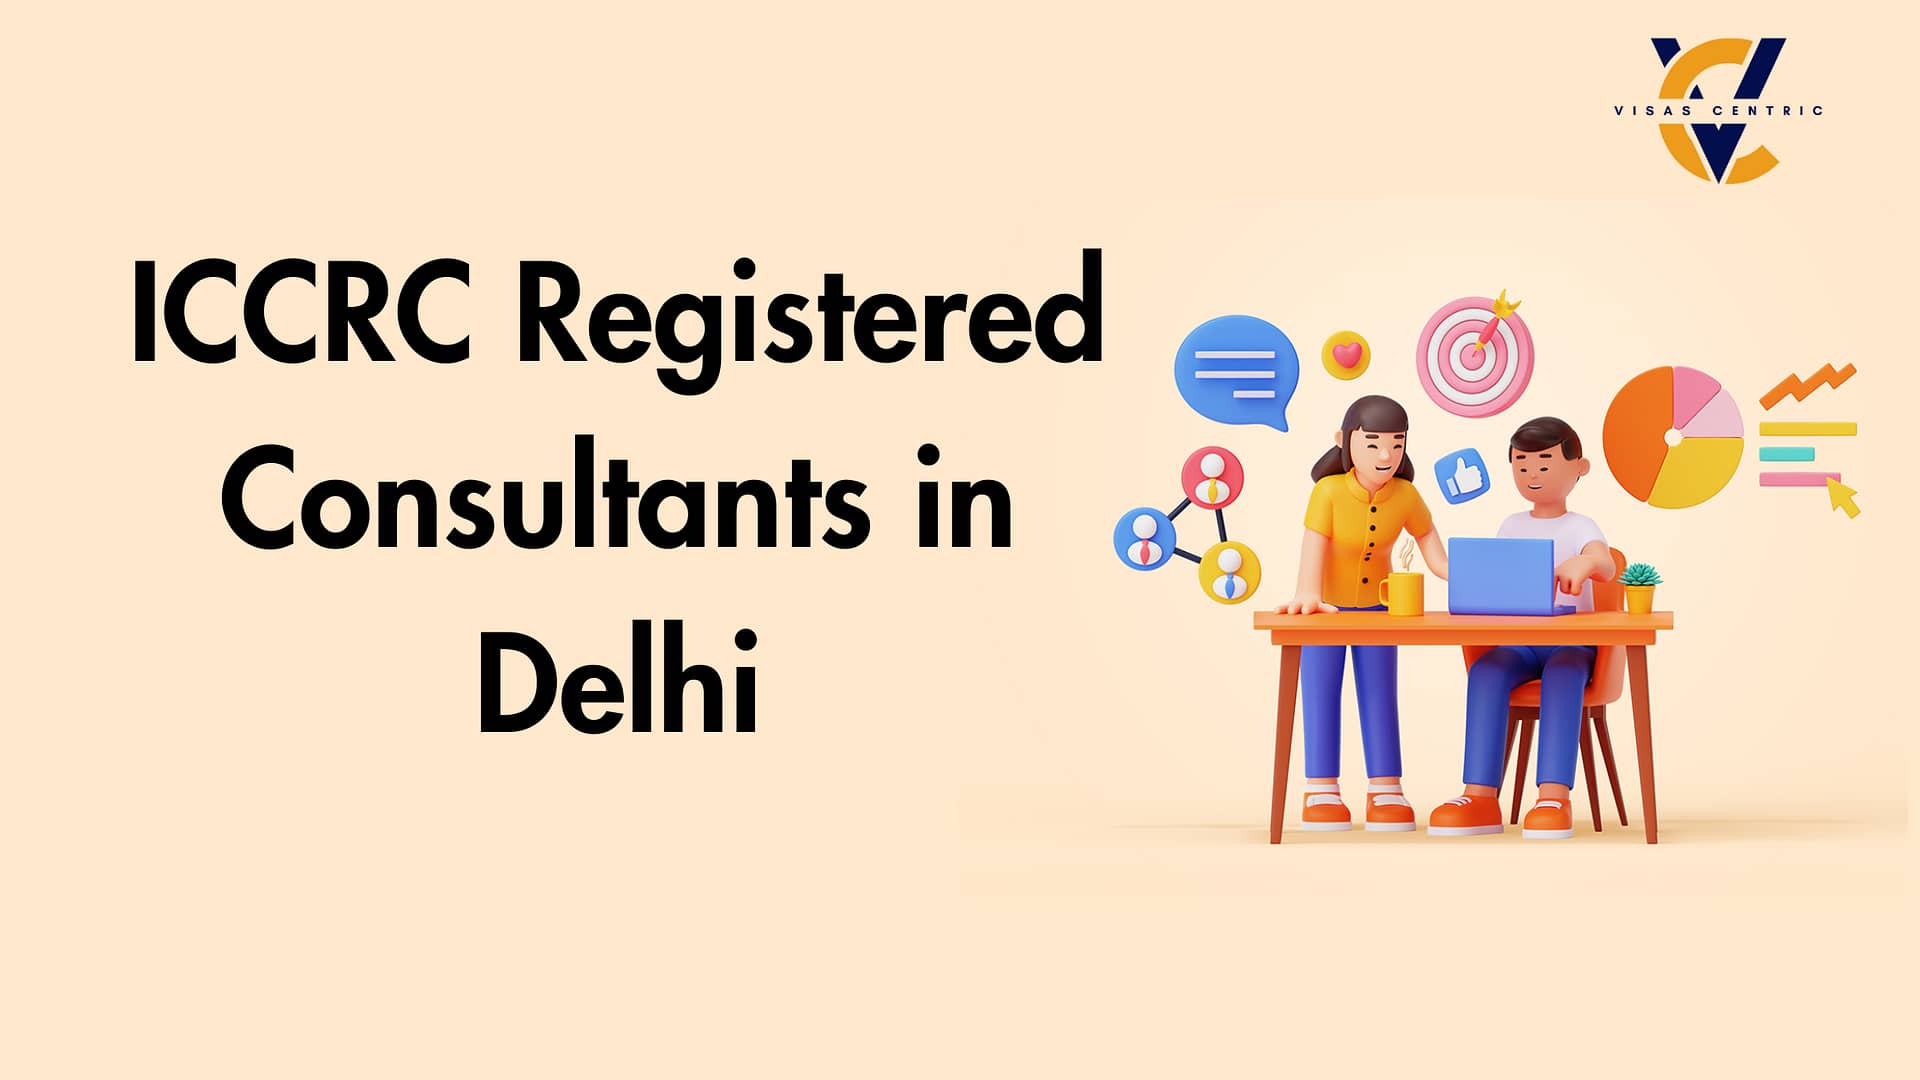 ICCRC Registered Consultants in Delhi